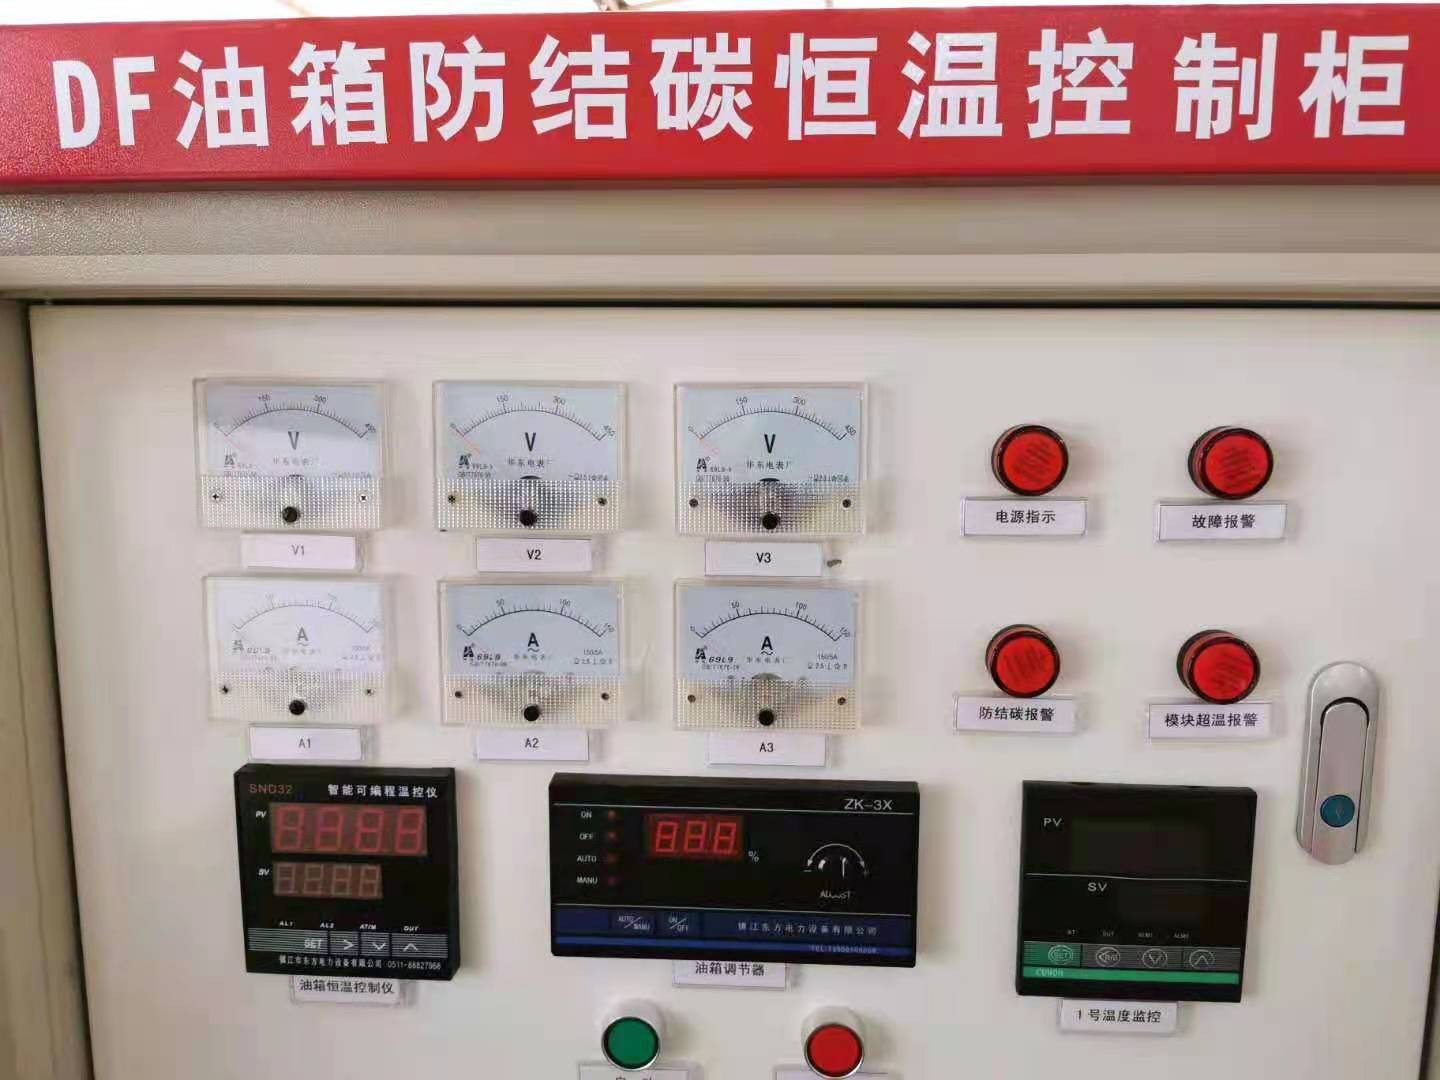 DF油箱防结碳恒温控制柜